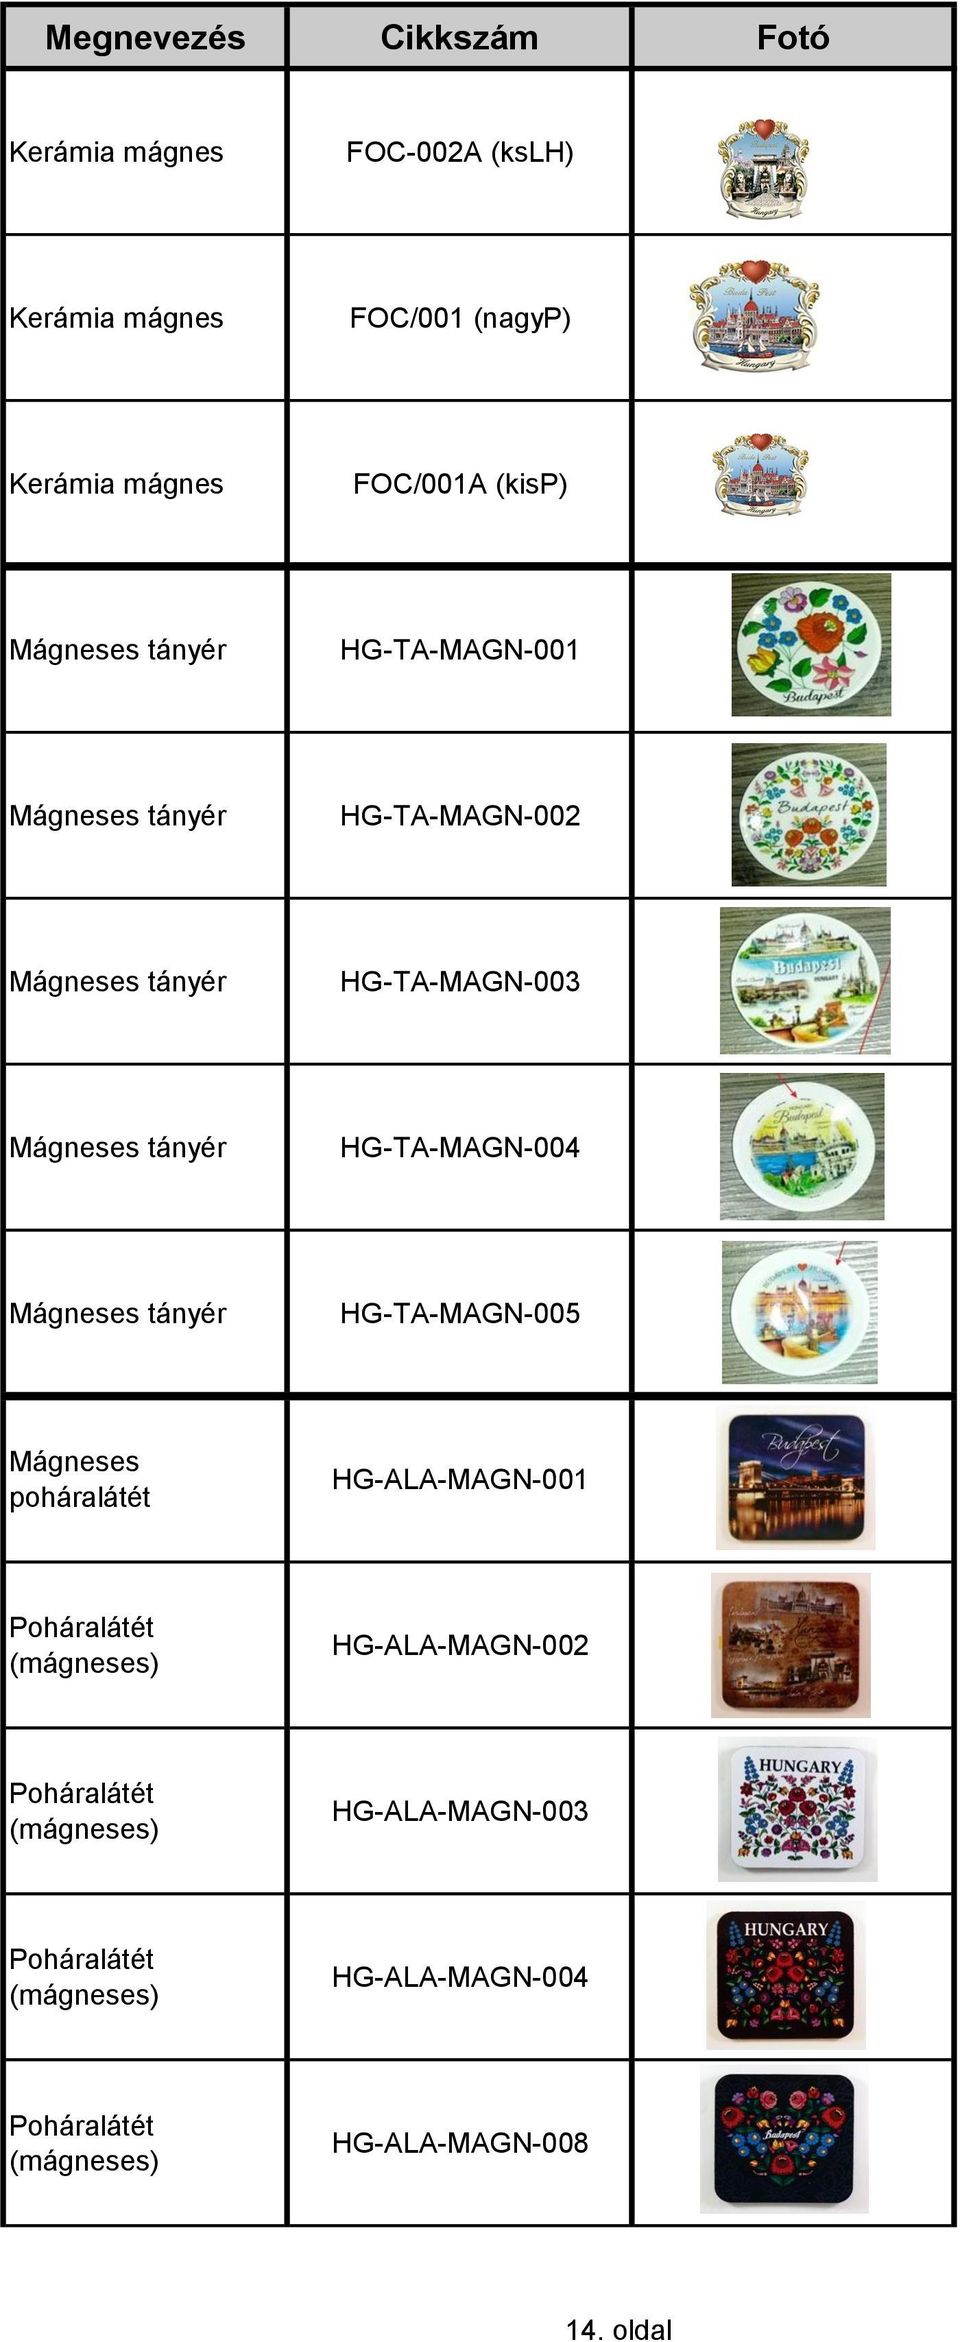 HG-TA-MAGN-004 Mágneses tányér HG-TA-MAGN-005 Mágneses poháralátét